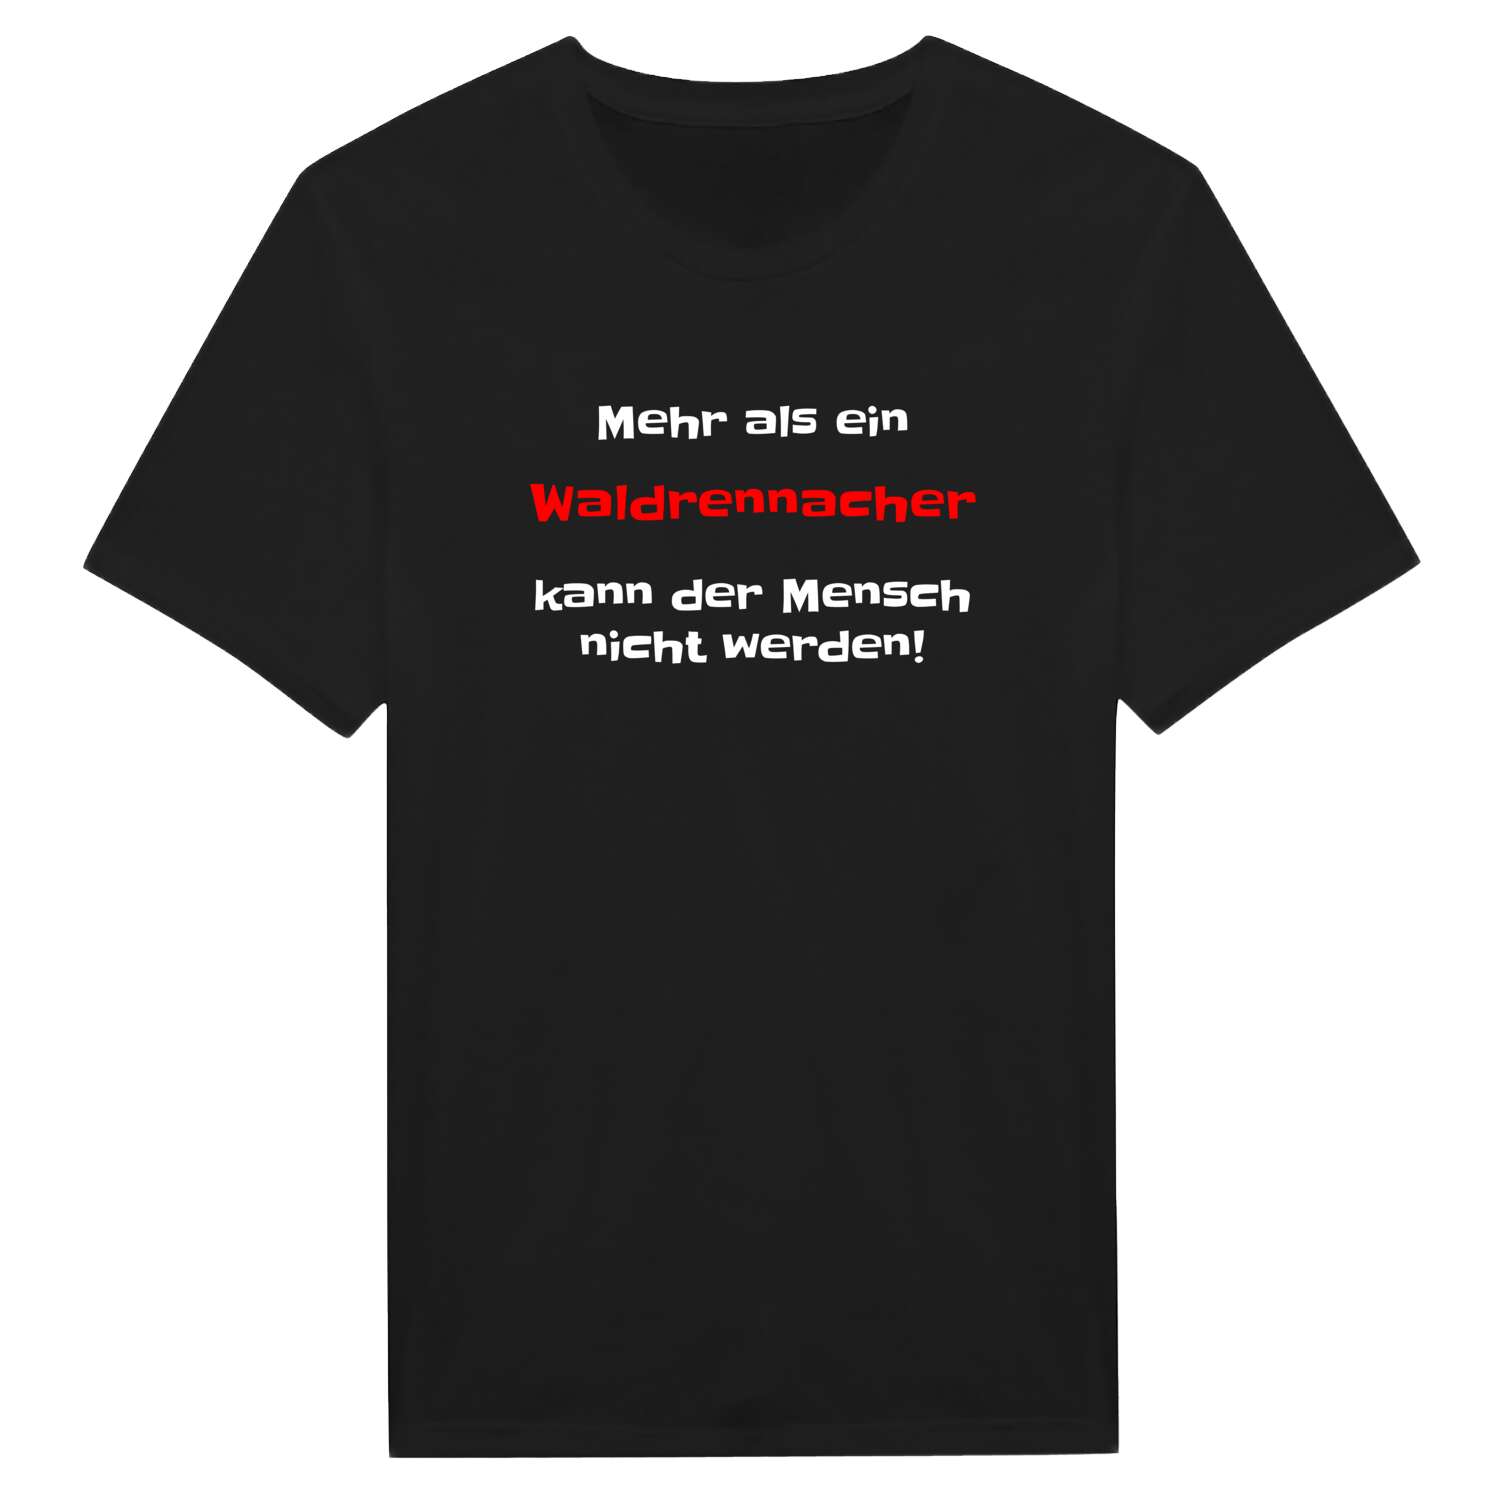 Waldrennach T-Shirt »Mehr als ein«